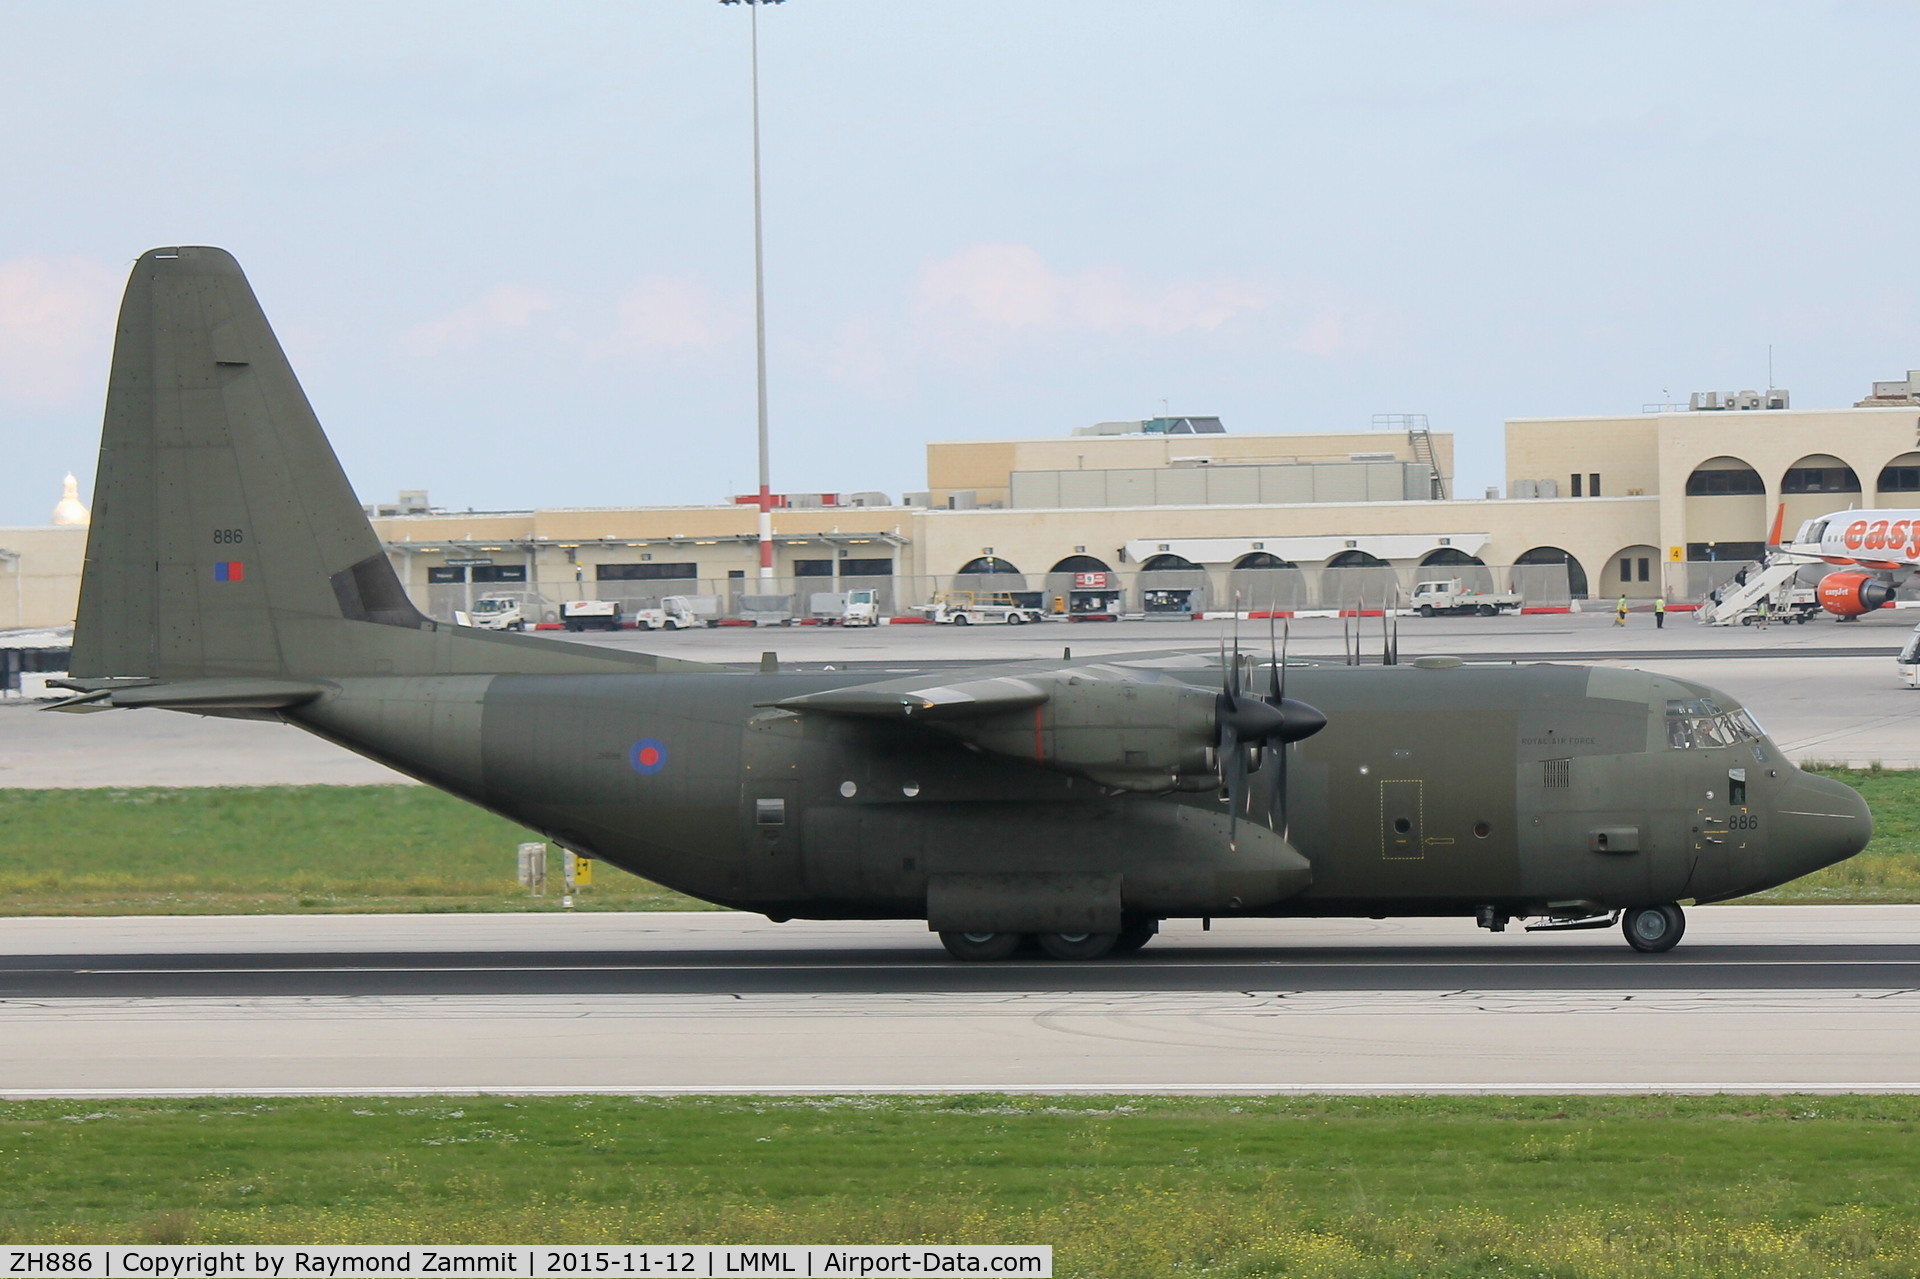 ZH886, 1999 Lockheed Martin C-130J Hercules C.5 C/N 382-5484, Lockheed C-130J Hercules C5 ZH886 Royal Air Force